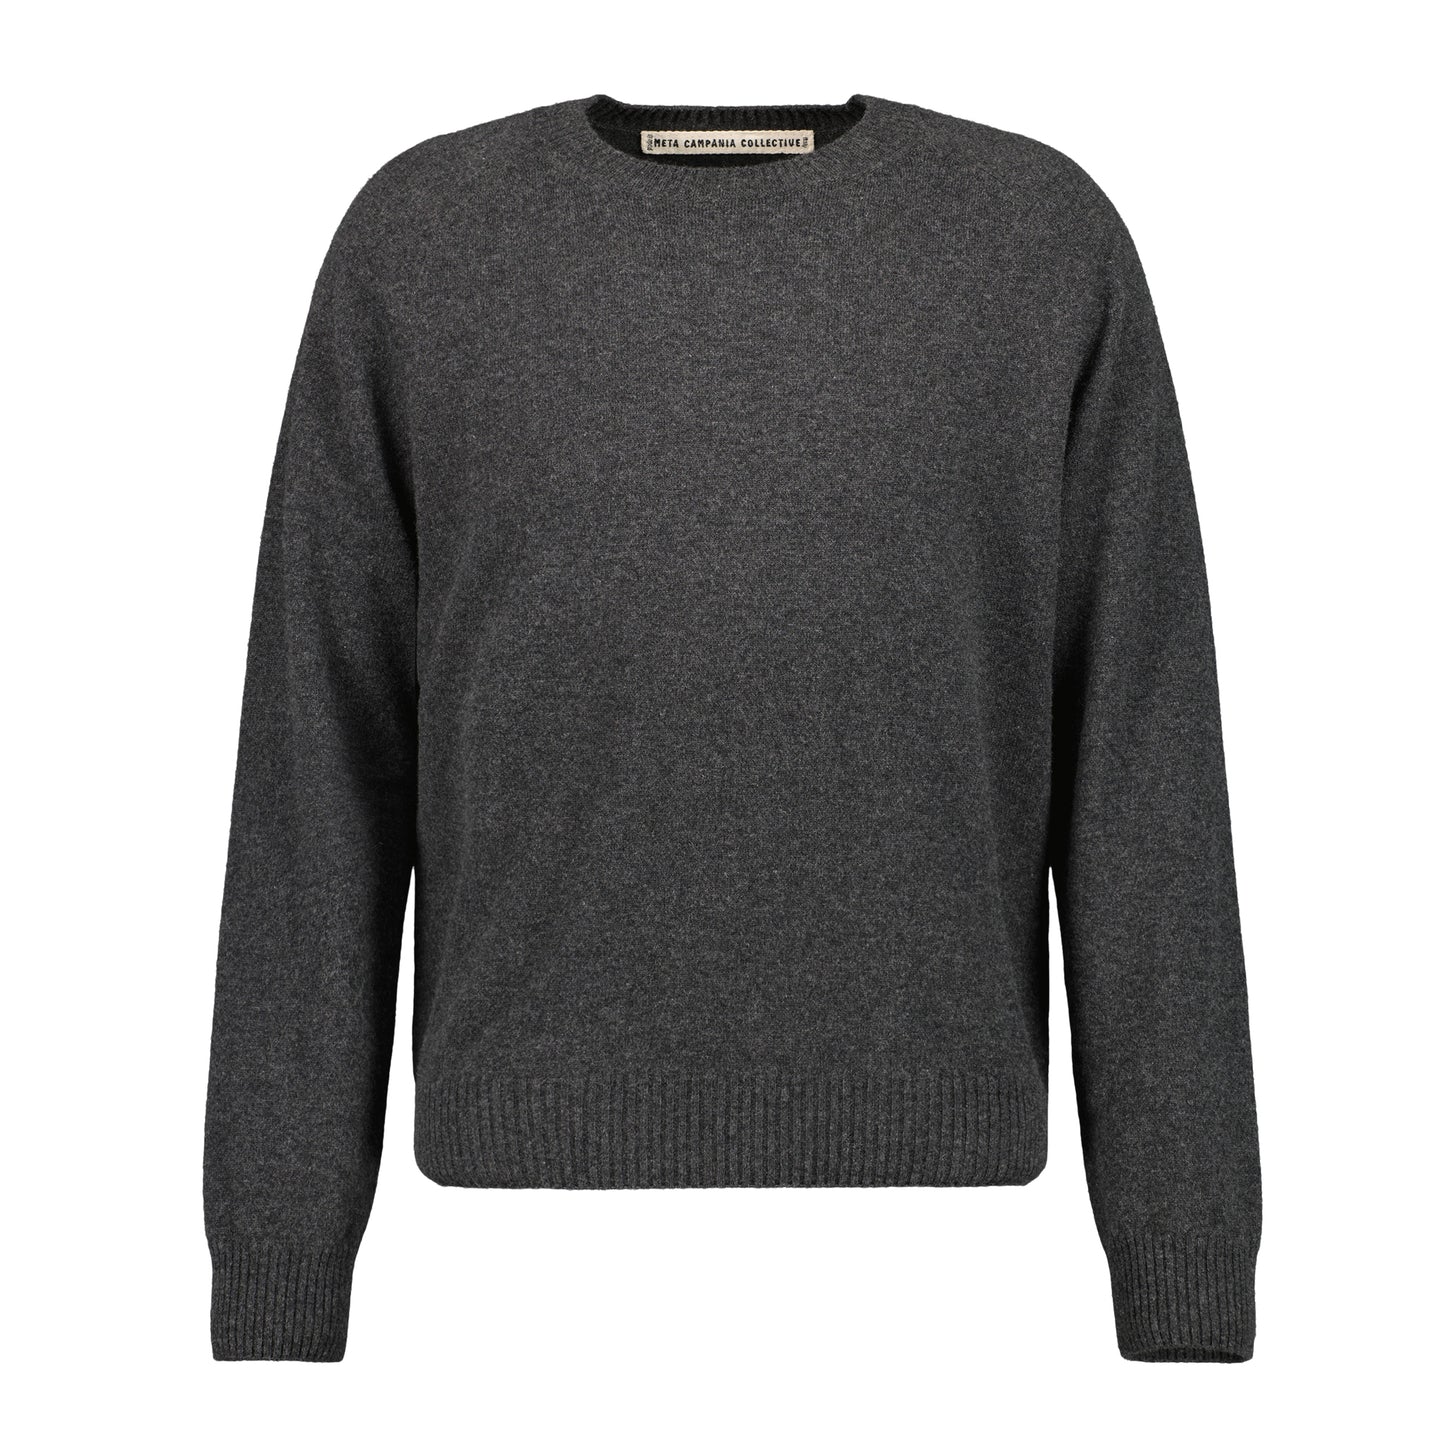 Jack Crew Neck Cashmere Sweater Weimaraner Grey